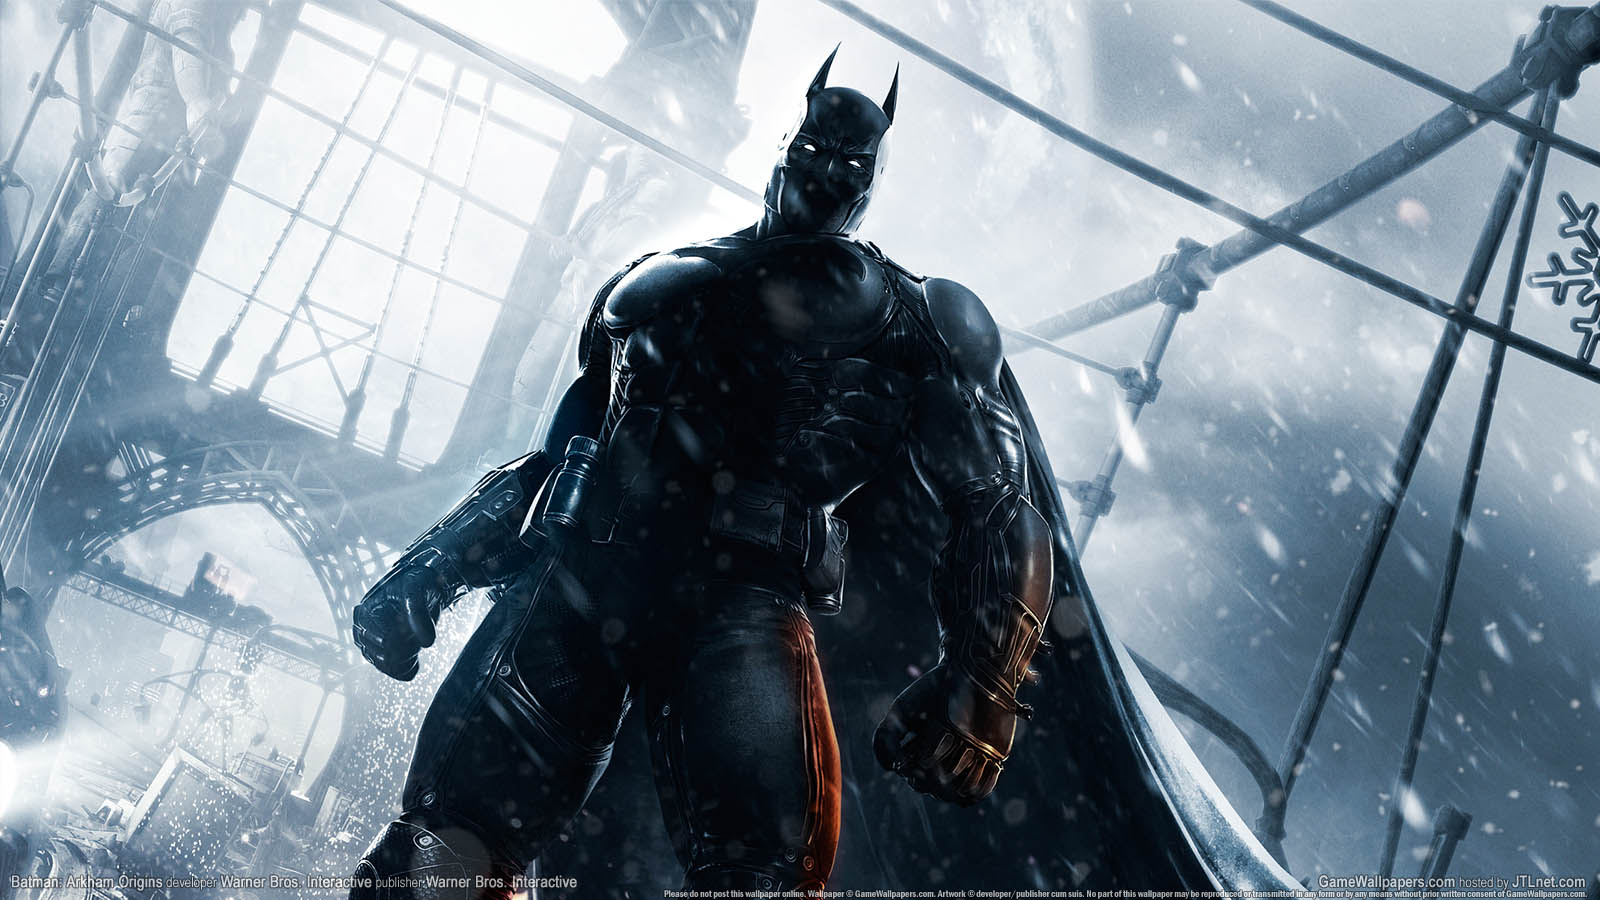 Batman: Arkham Origins fond d'cran 06 1600x900